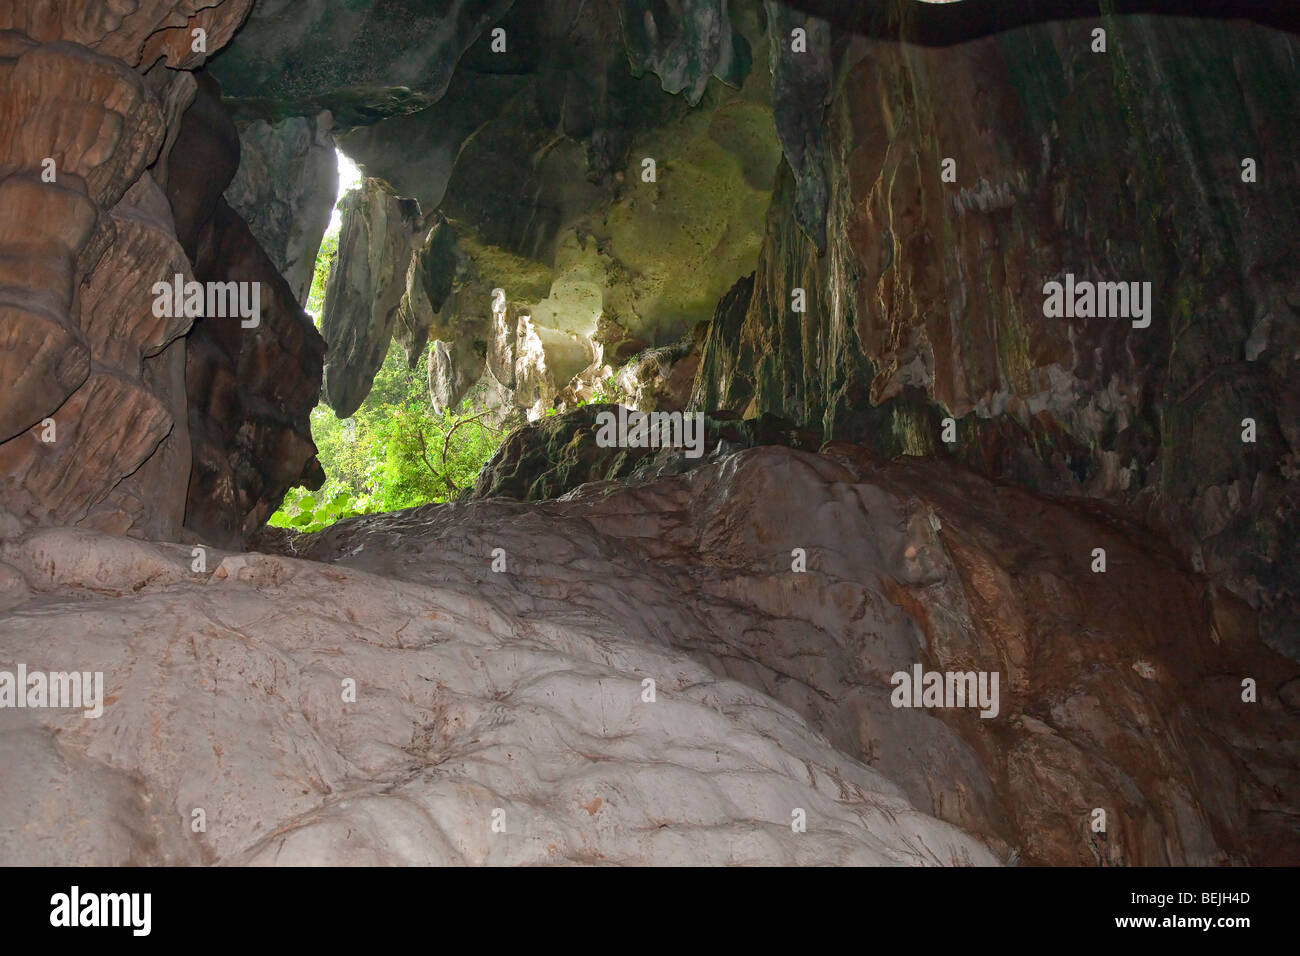 Gua Tempurung cave intérieur montrant la forêt couverte de l'entrée Banque D'Images